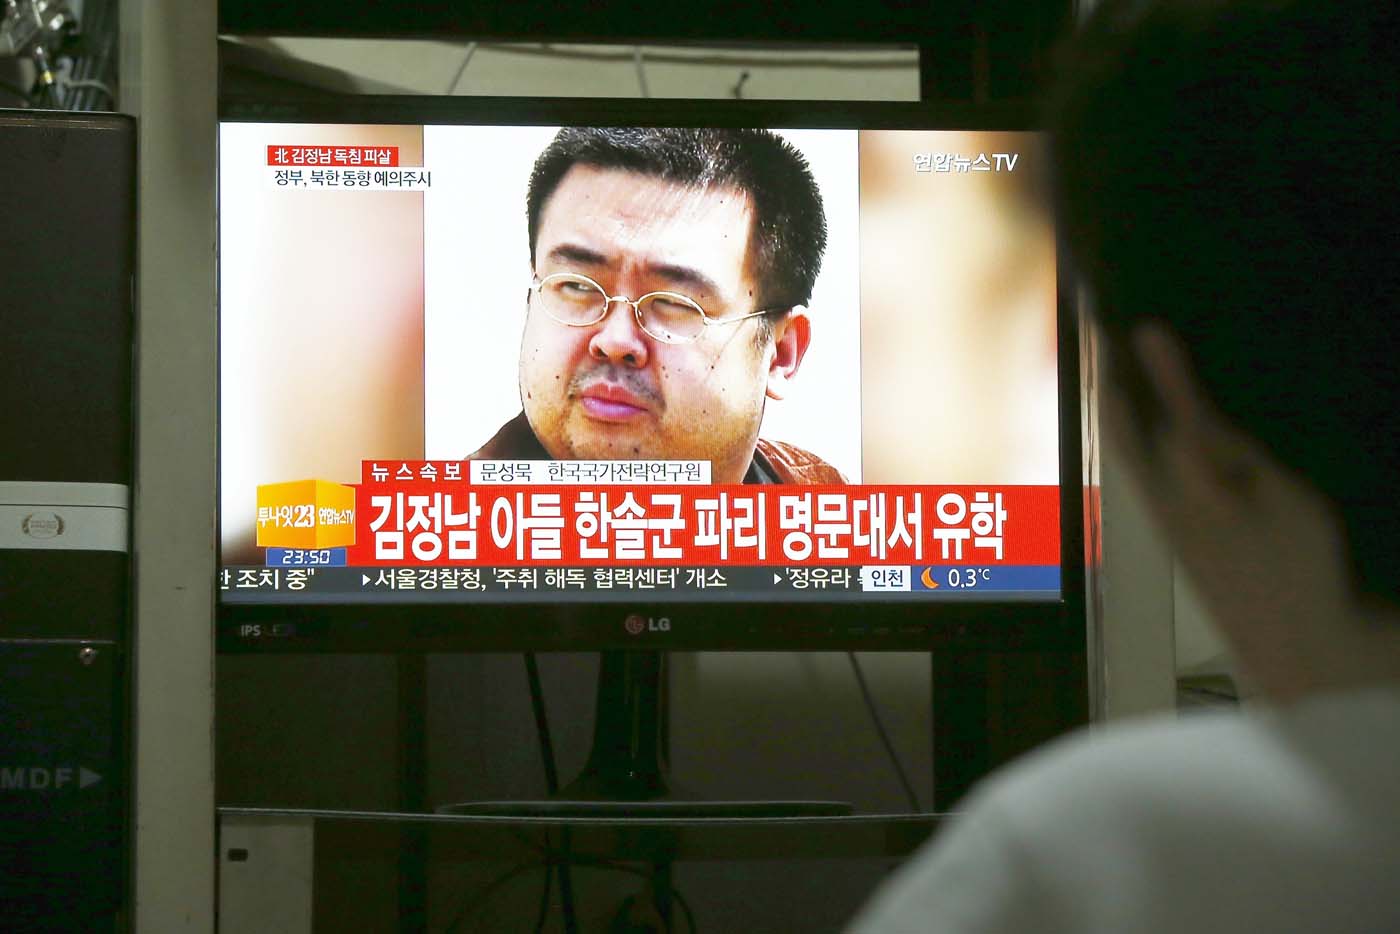 El caso Kim Jong-nam recrudece la tensión entre Pyongyang y Kuala Lumpur